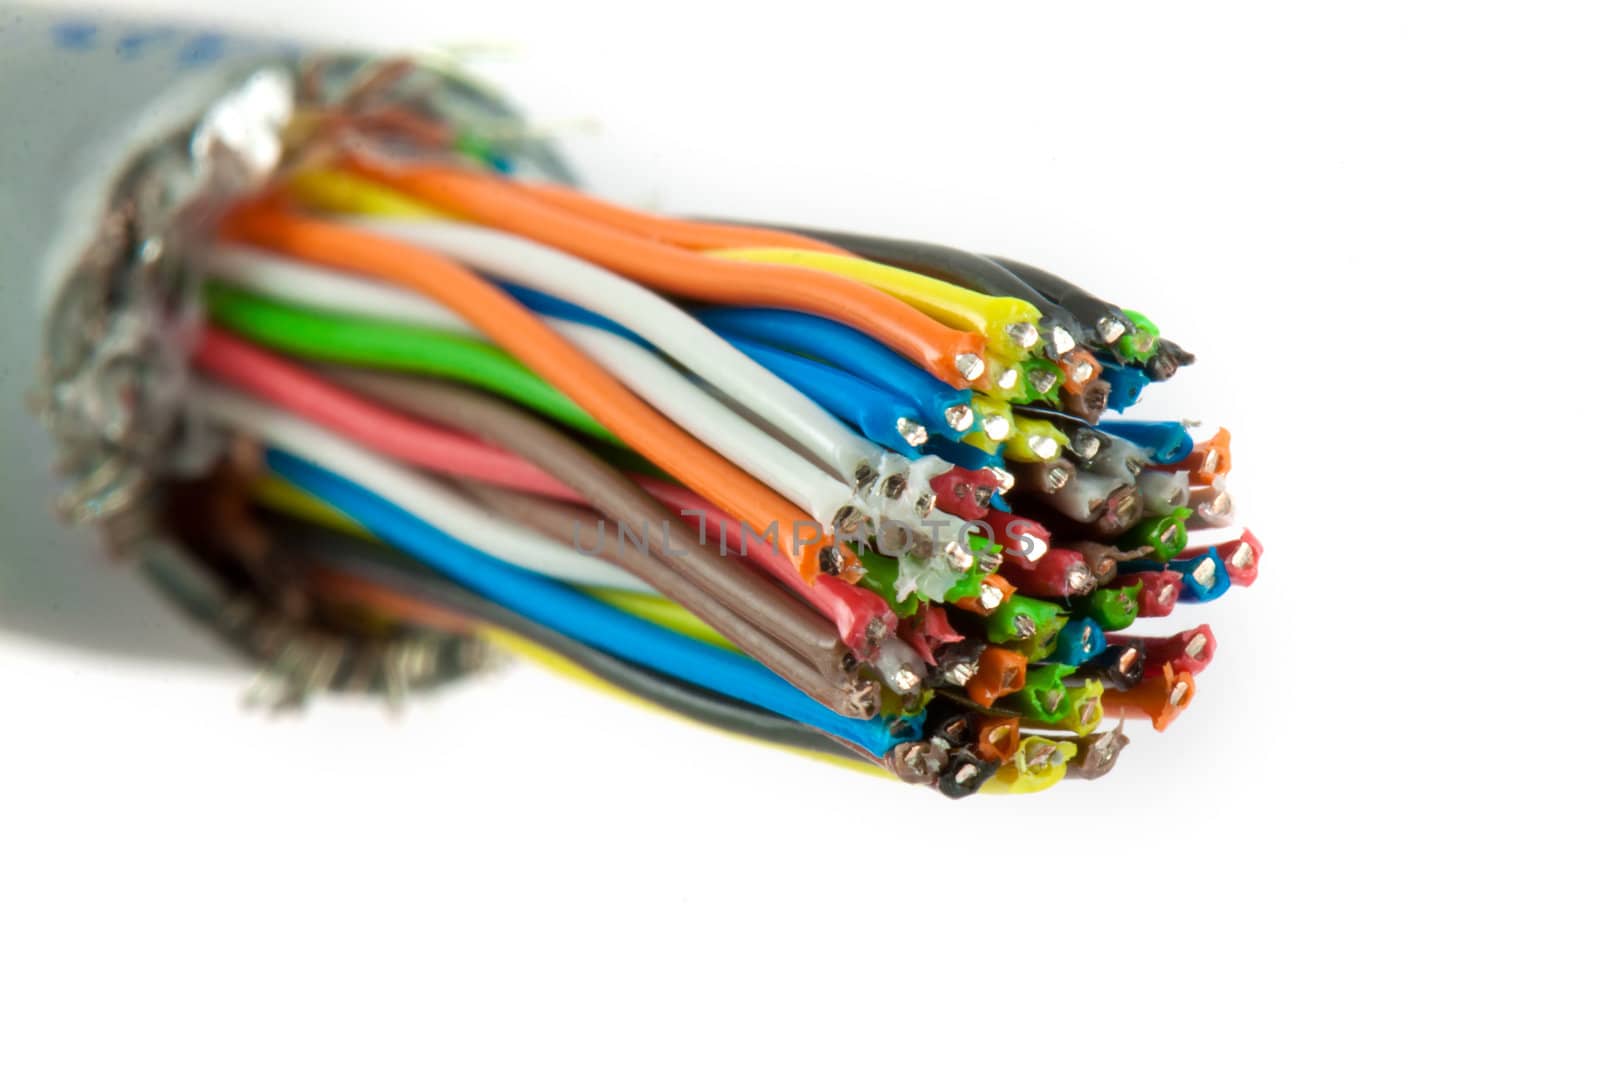 Bundle of color cables by vtorous